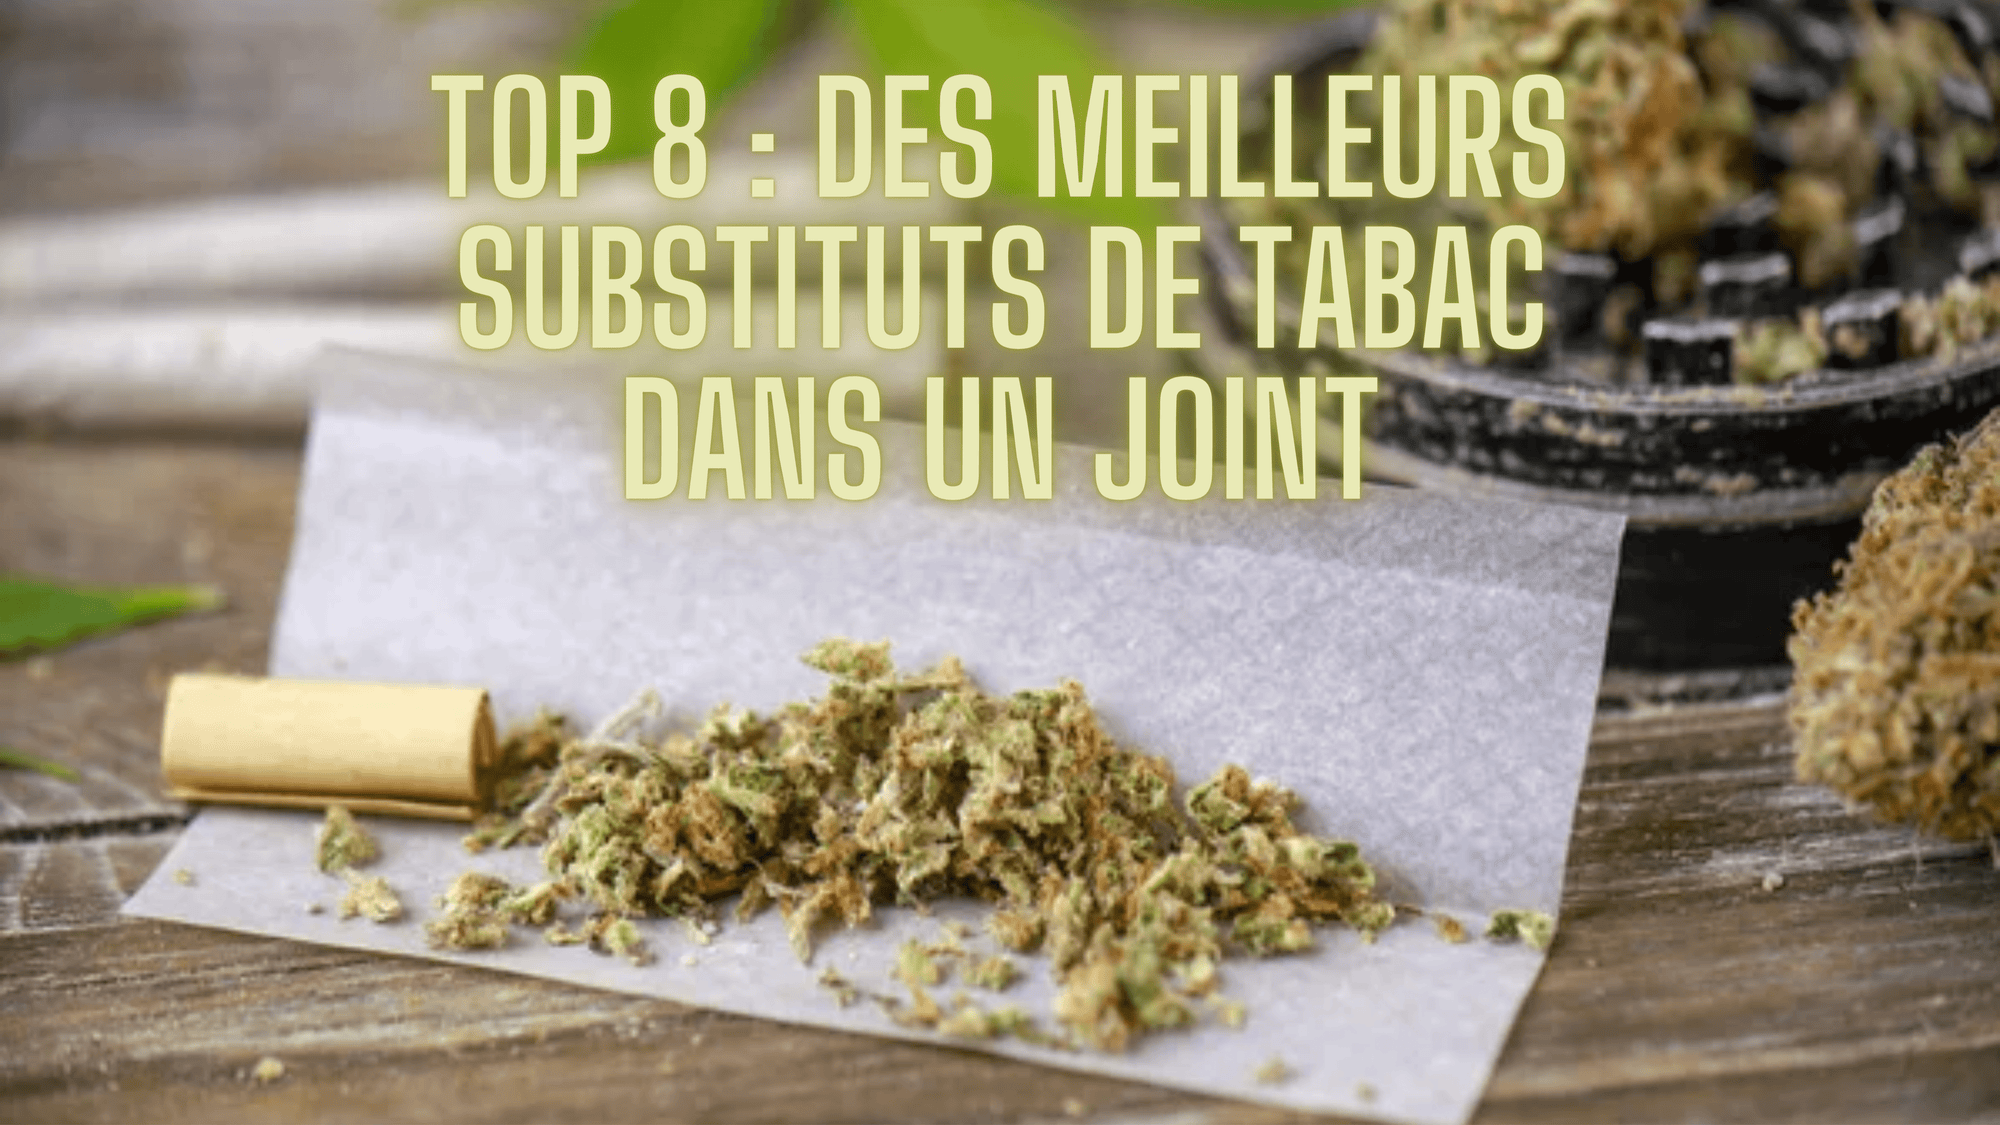 Top 8 des meilleurs substituts de tabac dans un joint - Hempetik CBD Shop